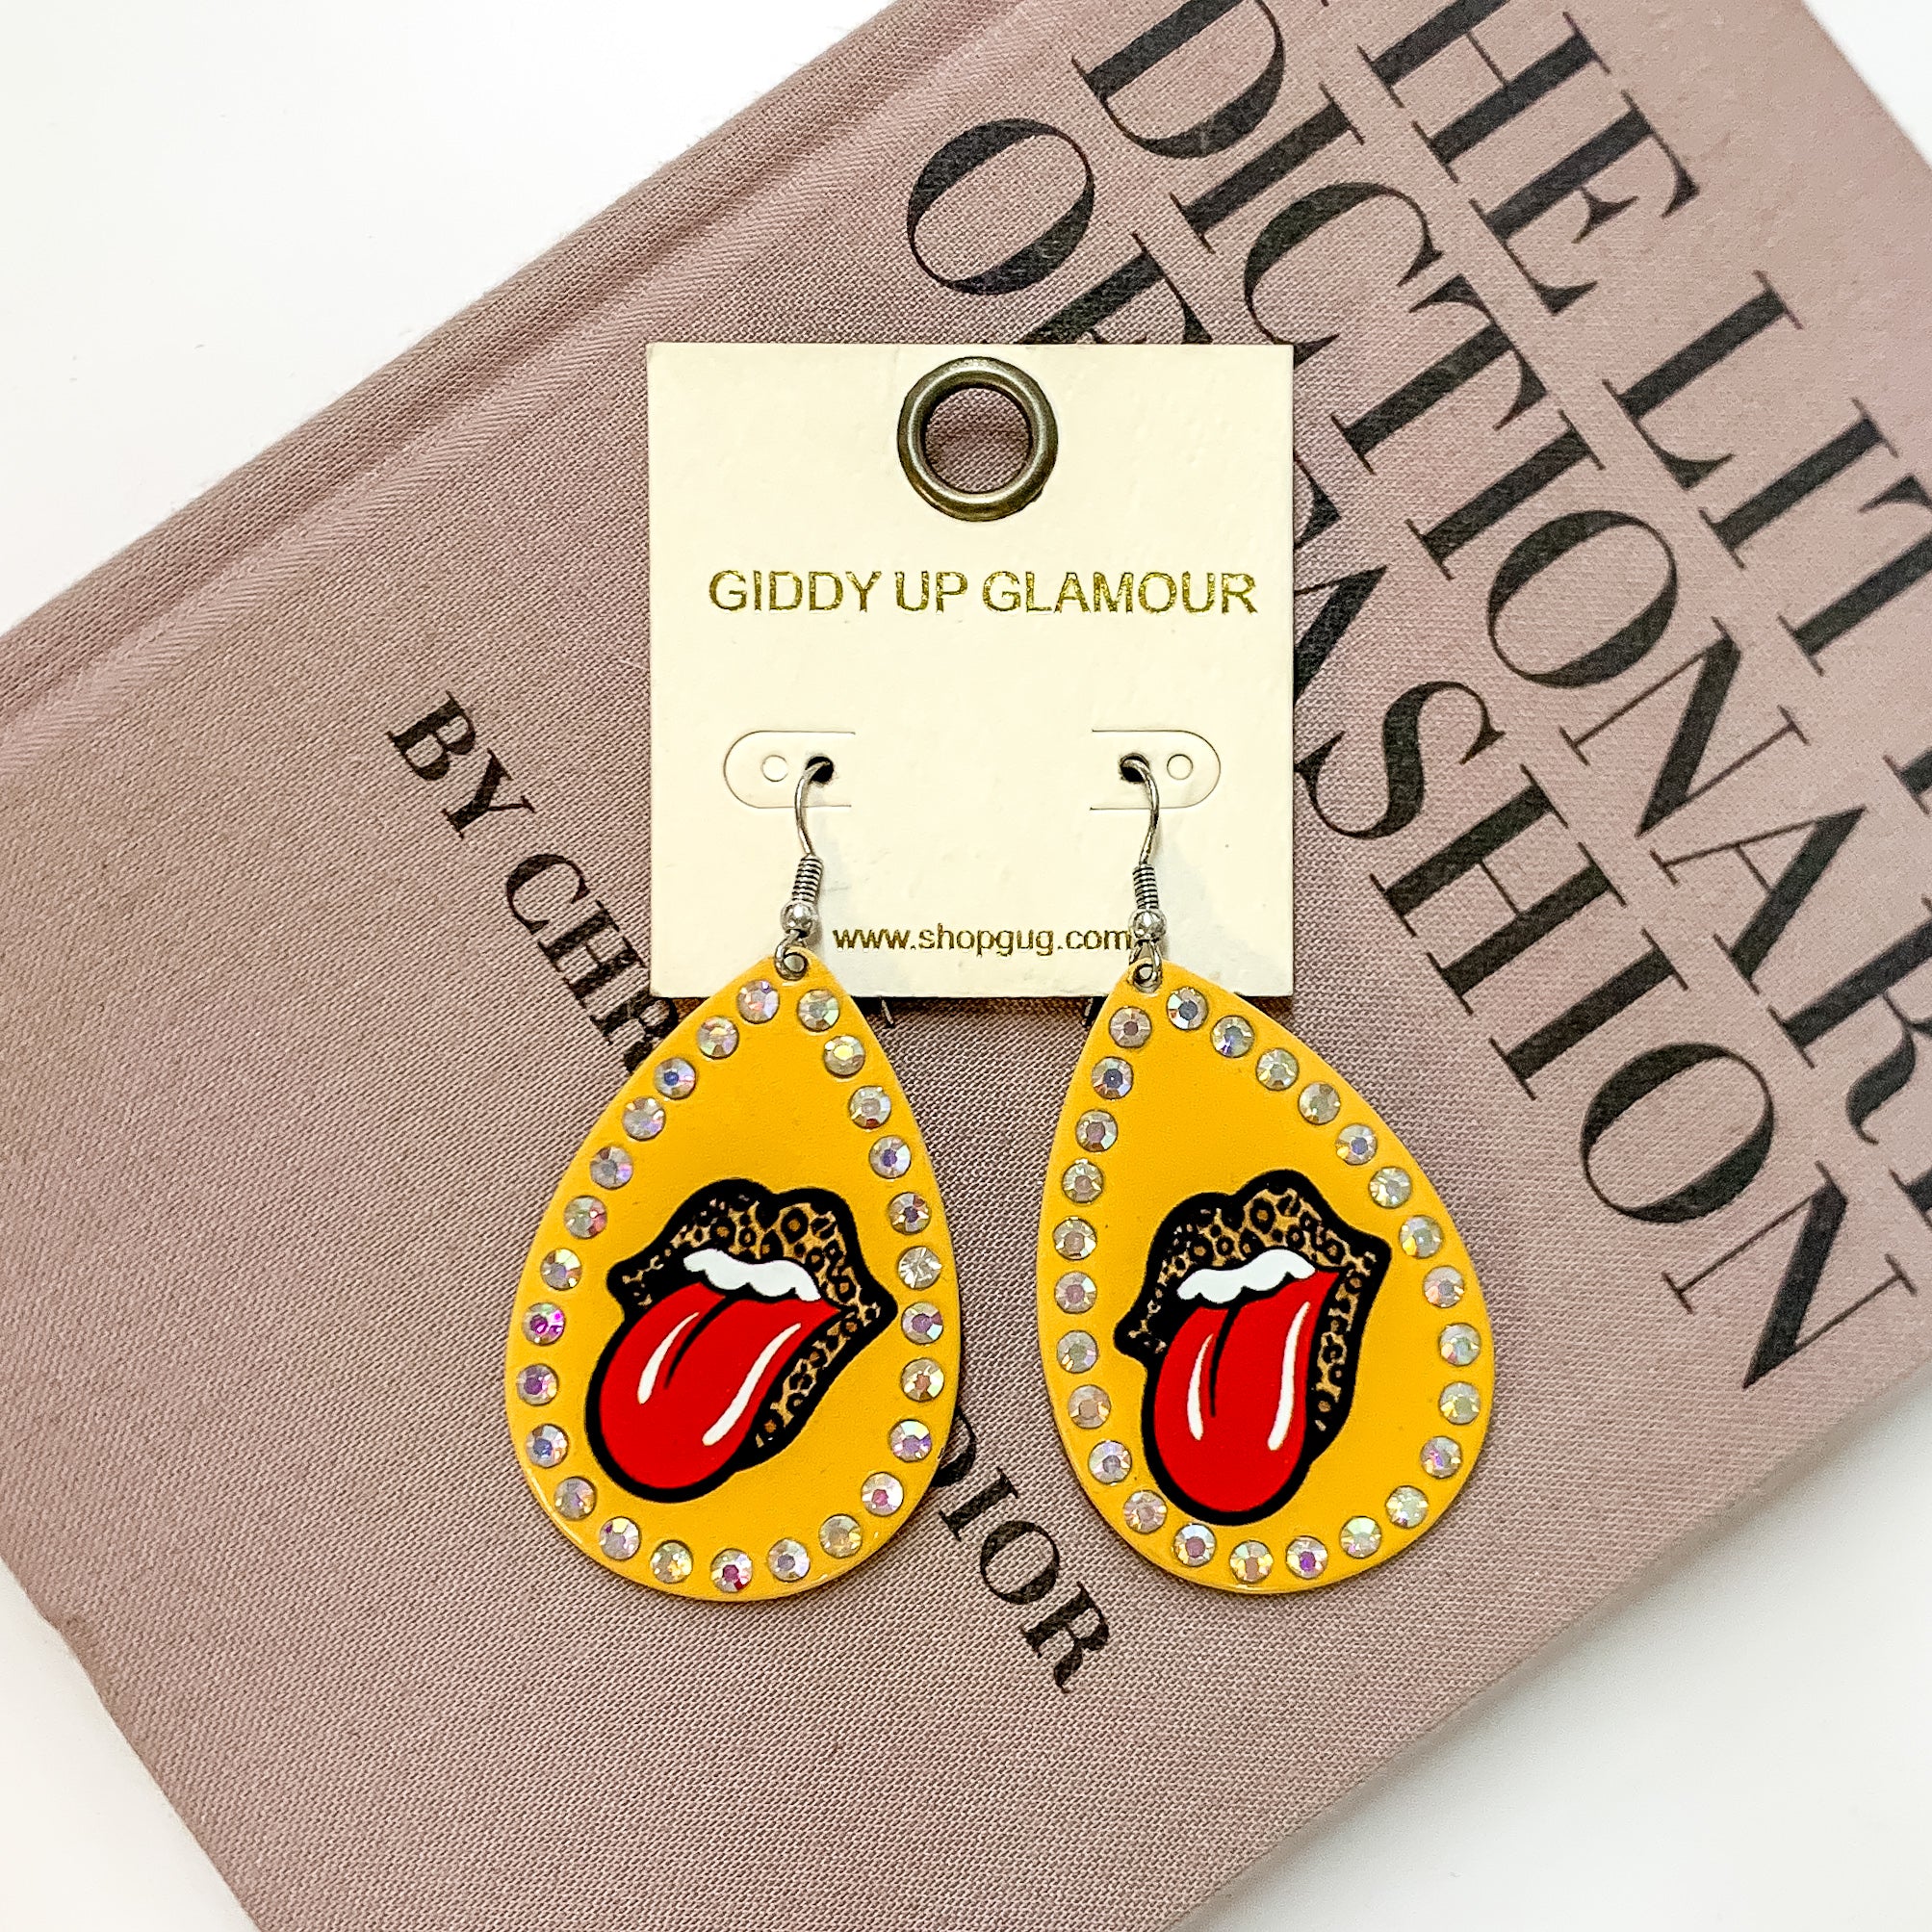 Rock On Metal Teardrop Earrings with Leopard Print in Mustard Yellow